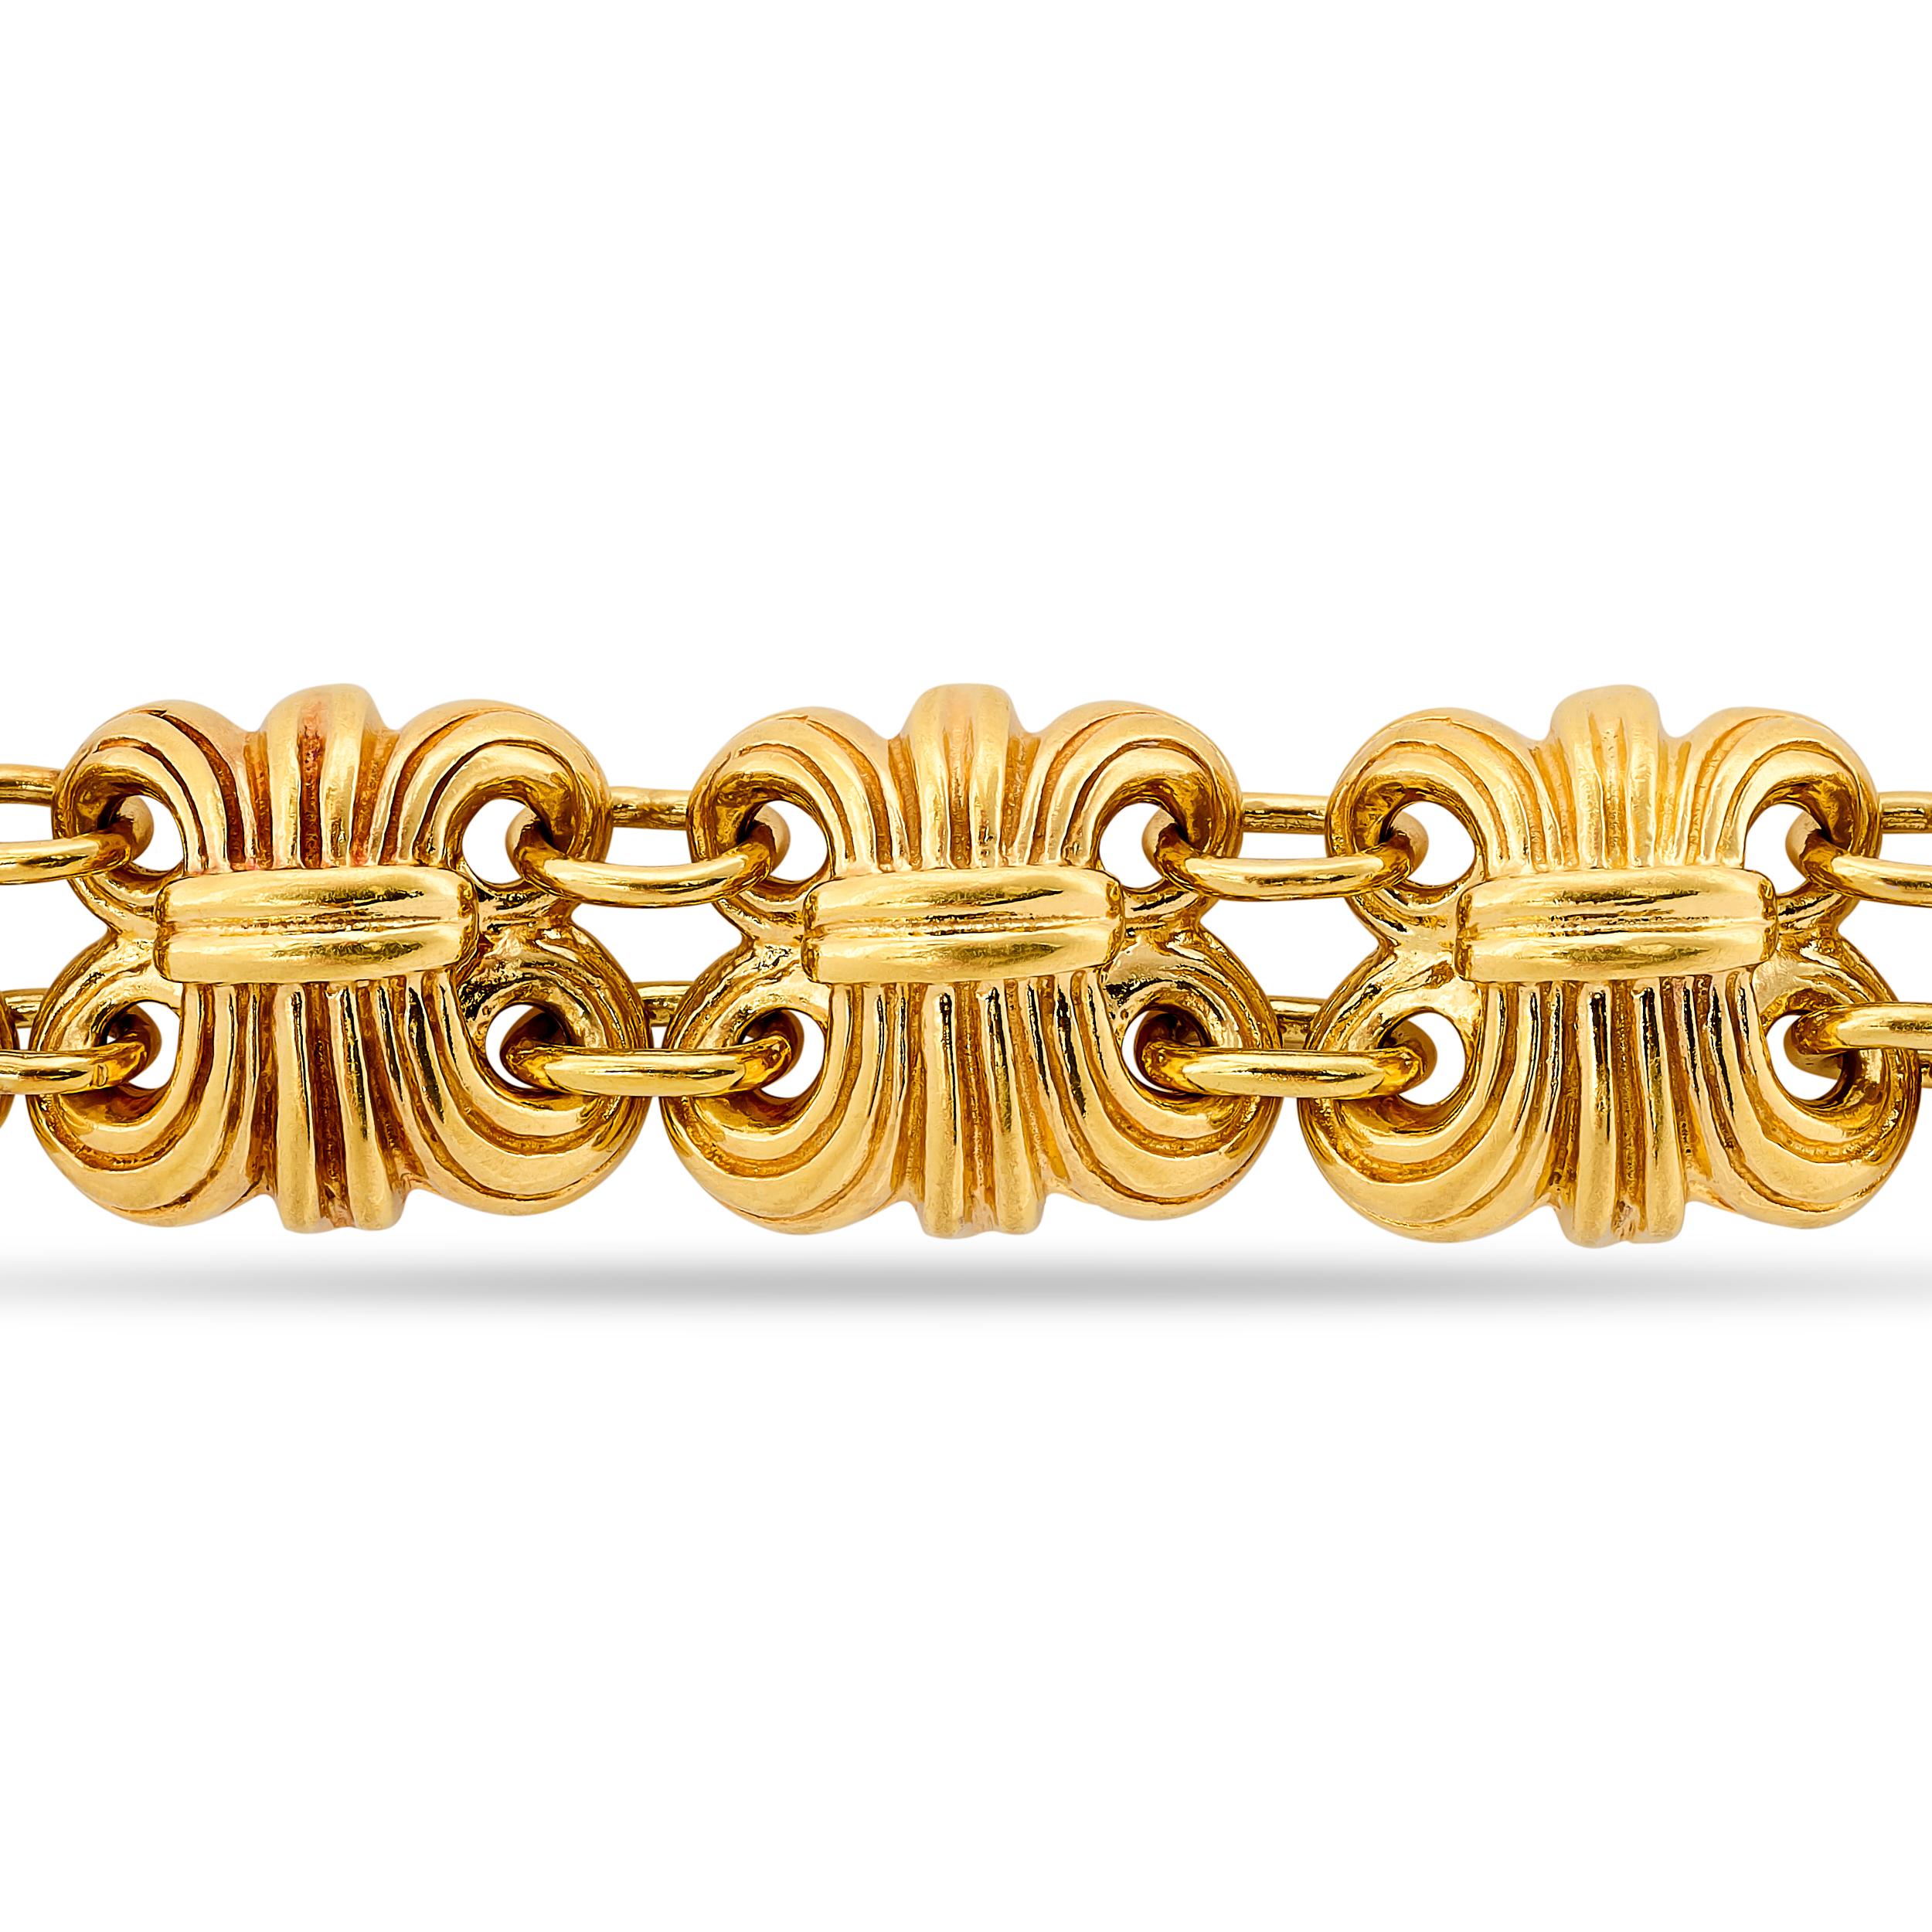 Ornez votre poignet d'un bracelet en or de style Fleur de Lis de Lagos, un design complexe à la sophistication intemporelle.

Fabriqué en or jaune 22 carats avec un fermoir 18 carats.
La longueur du bracelet est de 7